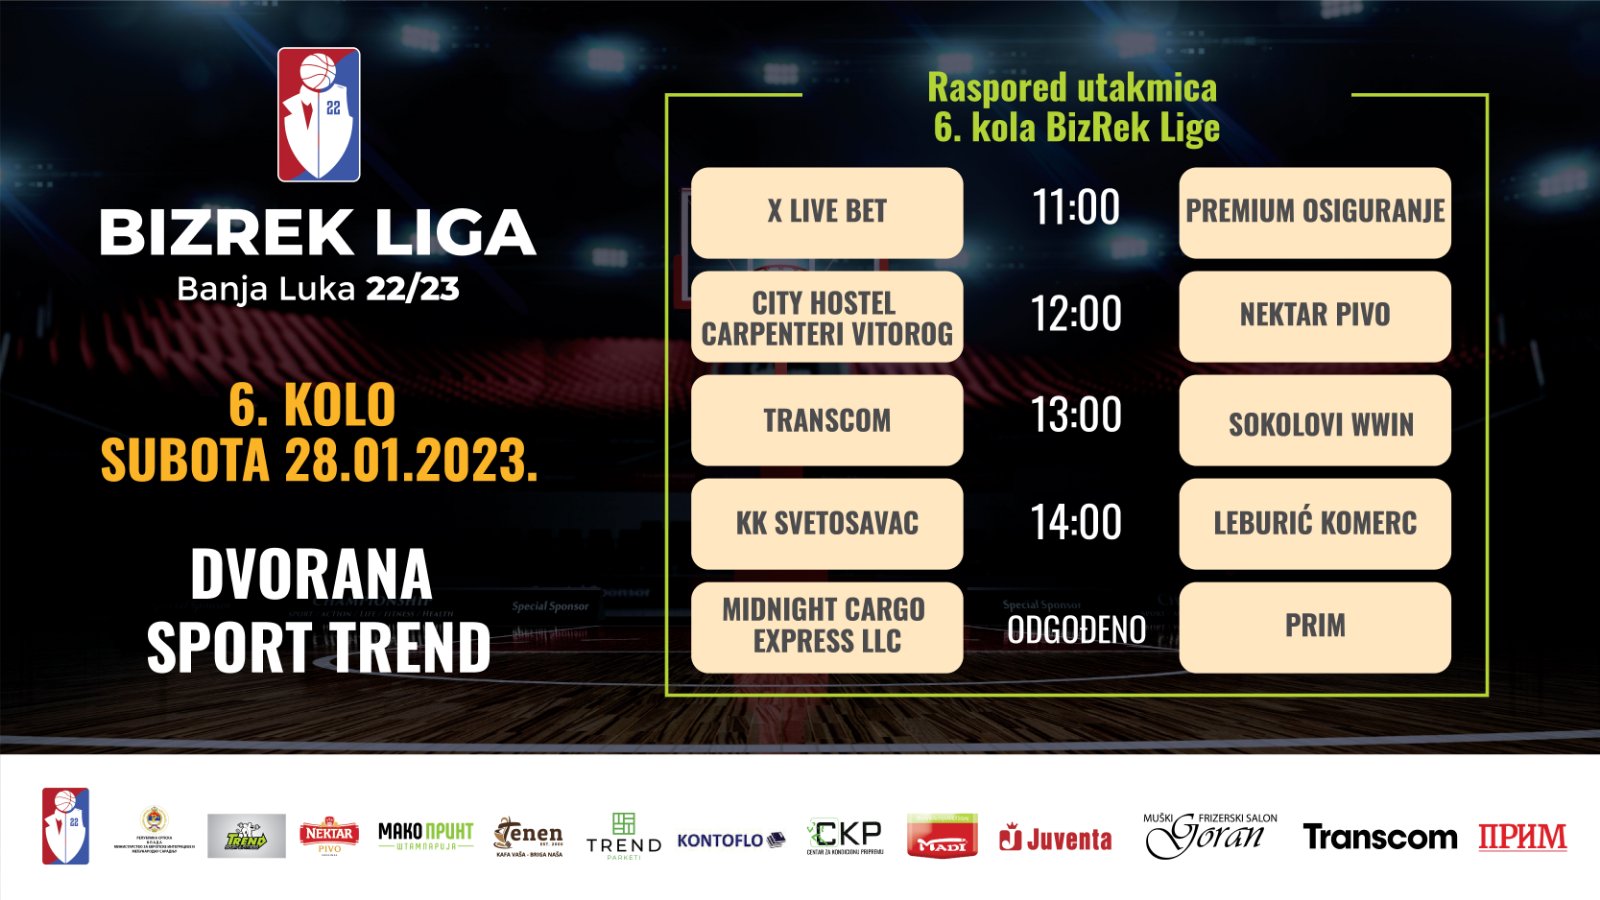 BizRek Liga Banja Luka 2022/23 6.Kolo